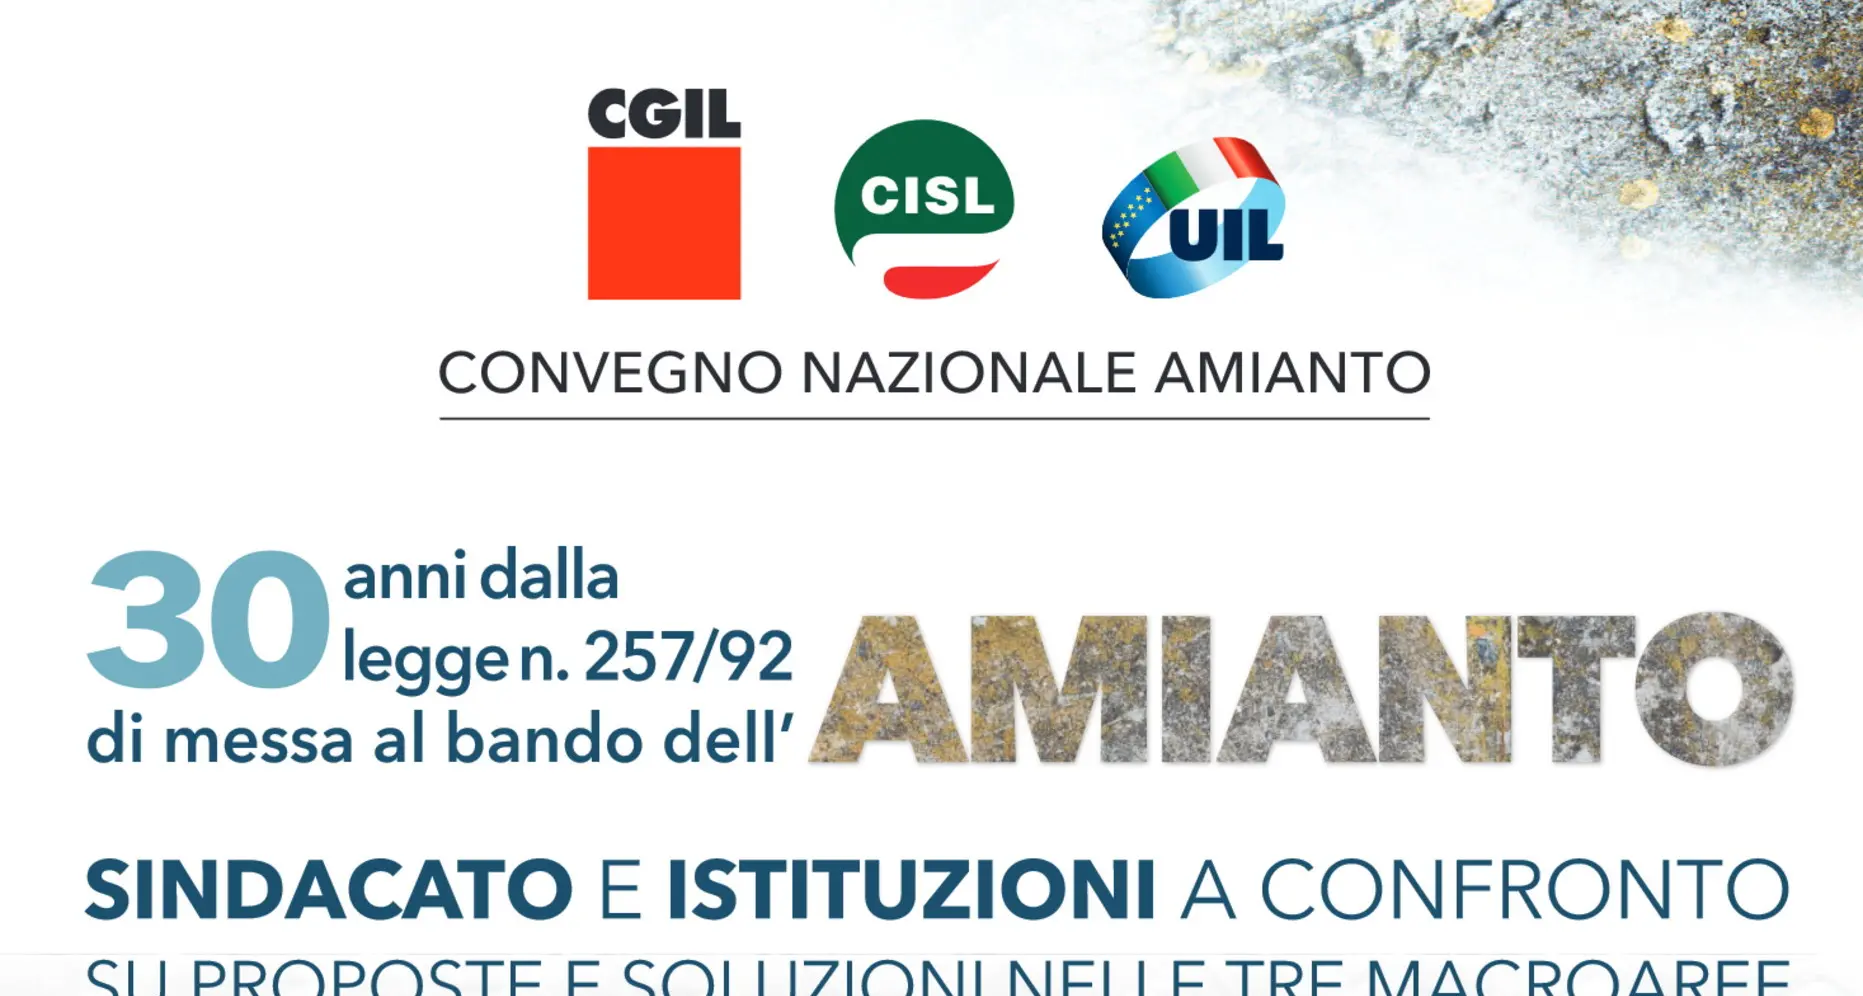 Amianto: il 28 aprile, convegno nazionale CGIL, CISL, UIL con Landini, Sbarra, Bombardieri